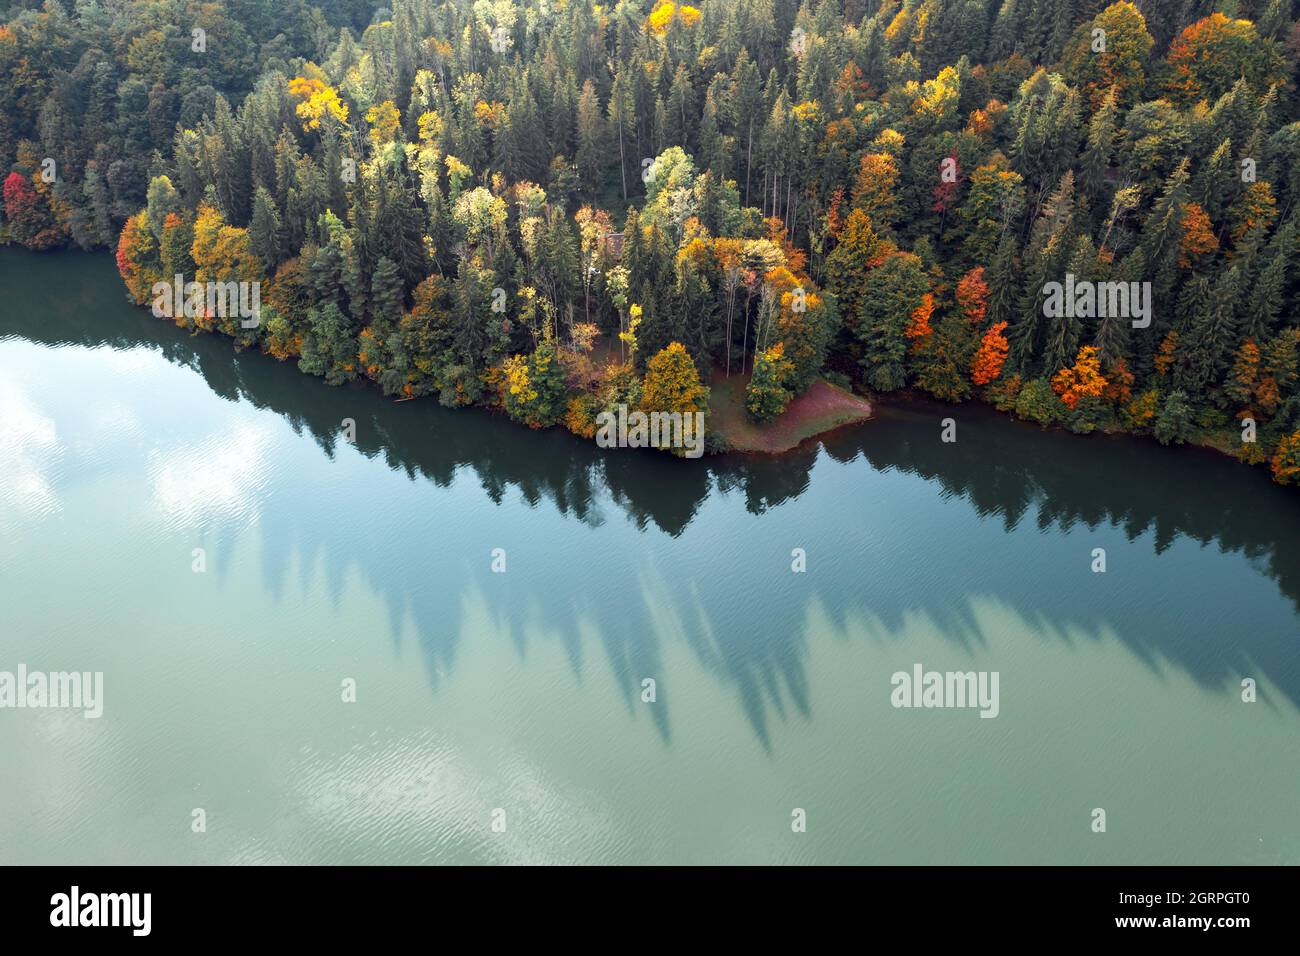 Luftaufnahme auf See mit türkisfarbenem Wasser in den Karpaten. Herbstwald mit Orangenbäumen an der Küste. Terebland-Ritske Stausee (Vilshanske) am Terebland-Fluss, Transkarpatien, Ukraine Stockfoto